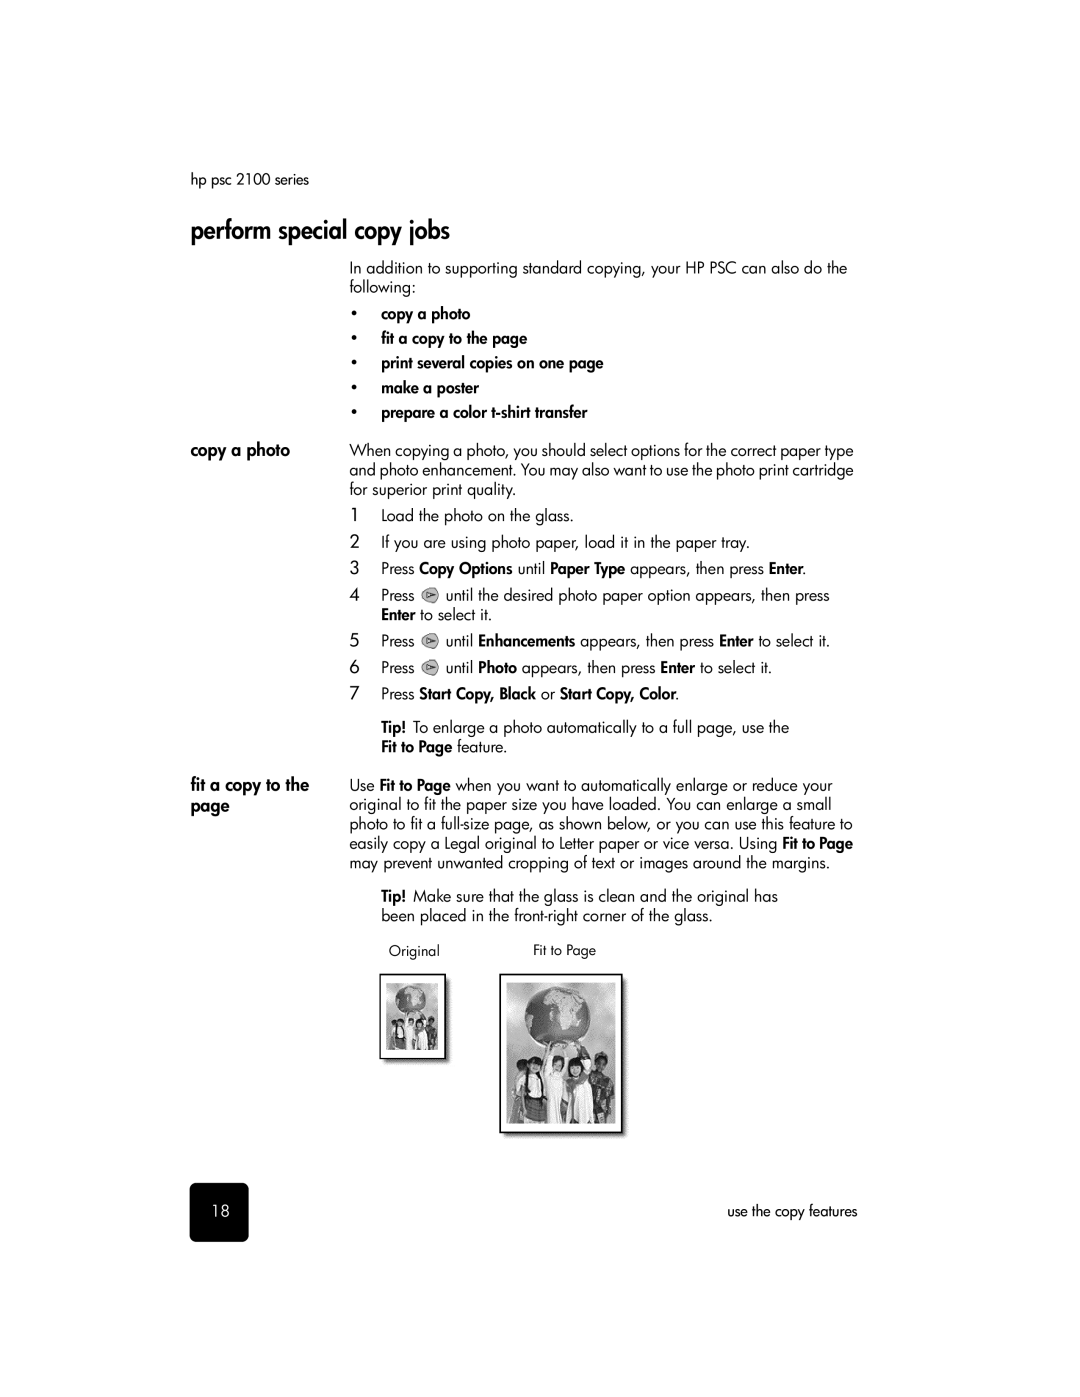 HP 2100 manual Perform special copy jobs, Copy a photo, Fit a copy to 